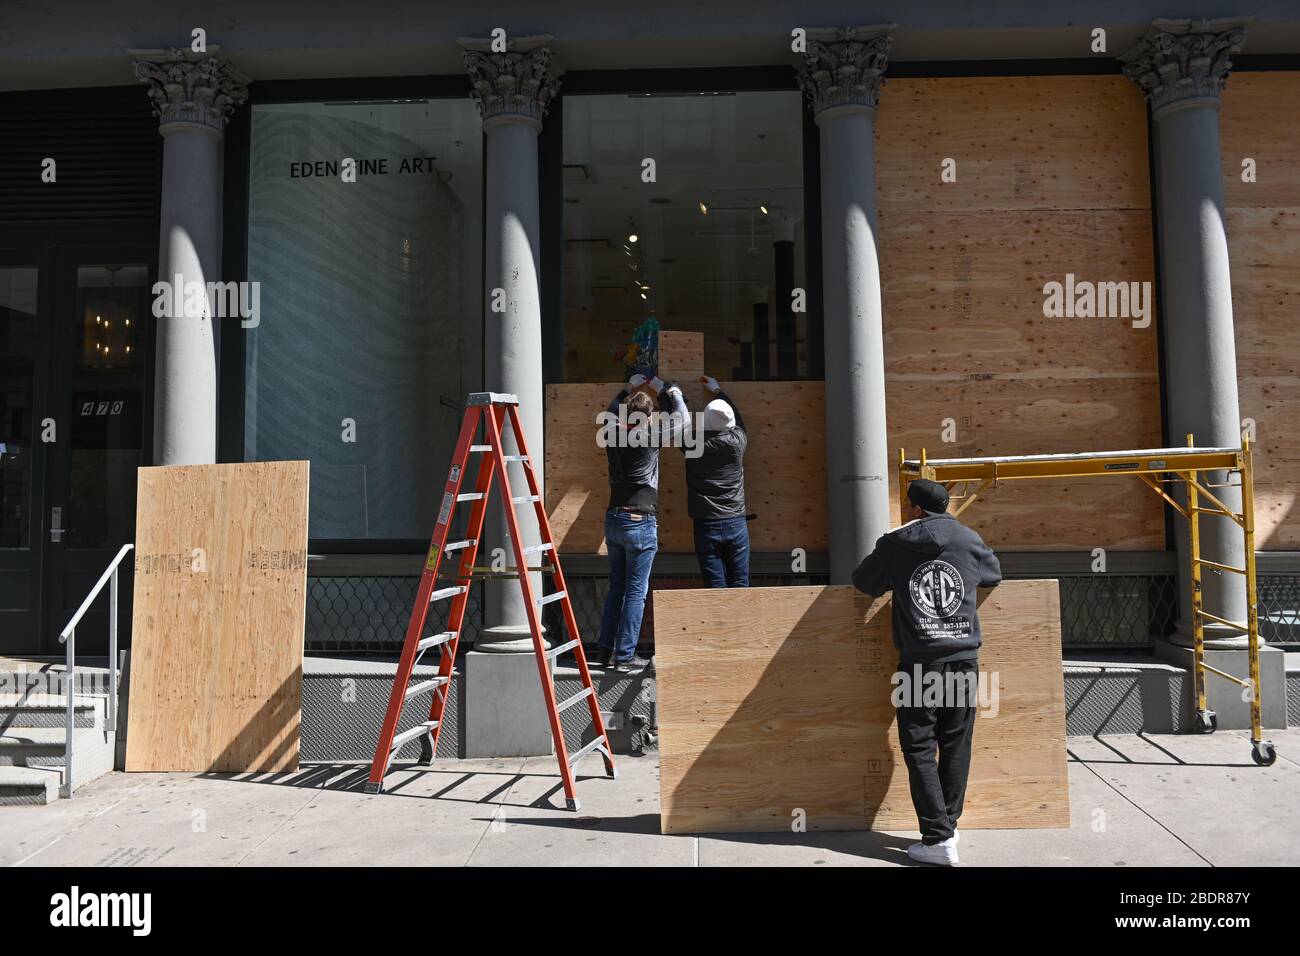 Les travailleurs s'embarquant dans les fenêtres de la galerie d'art Eden Fine dans le quartier de SoHo à New York. New York, États-Unis - 07 avril 2020 Banque D'Images